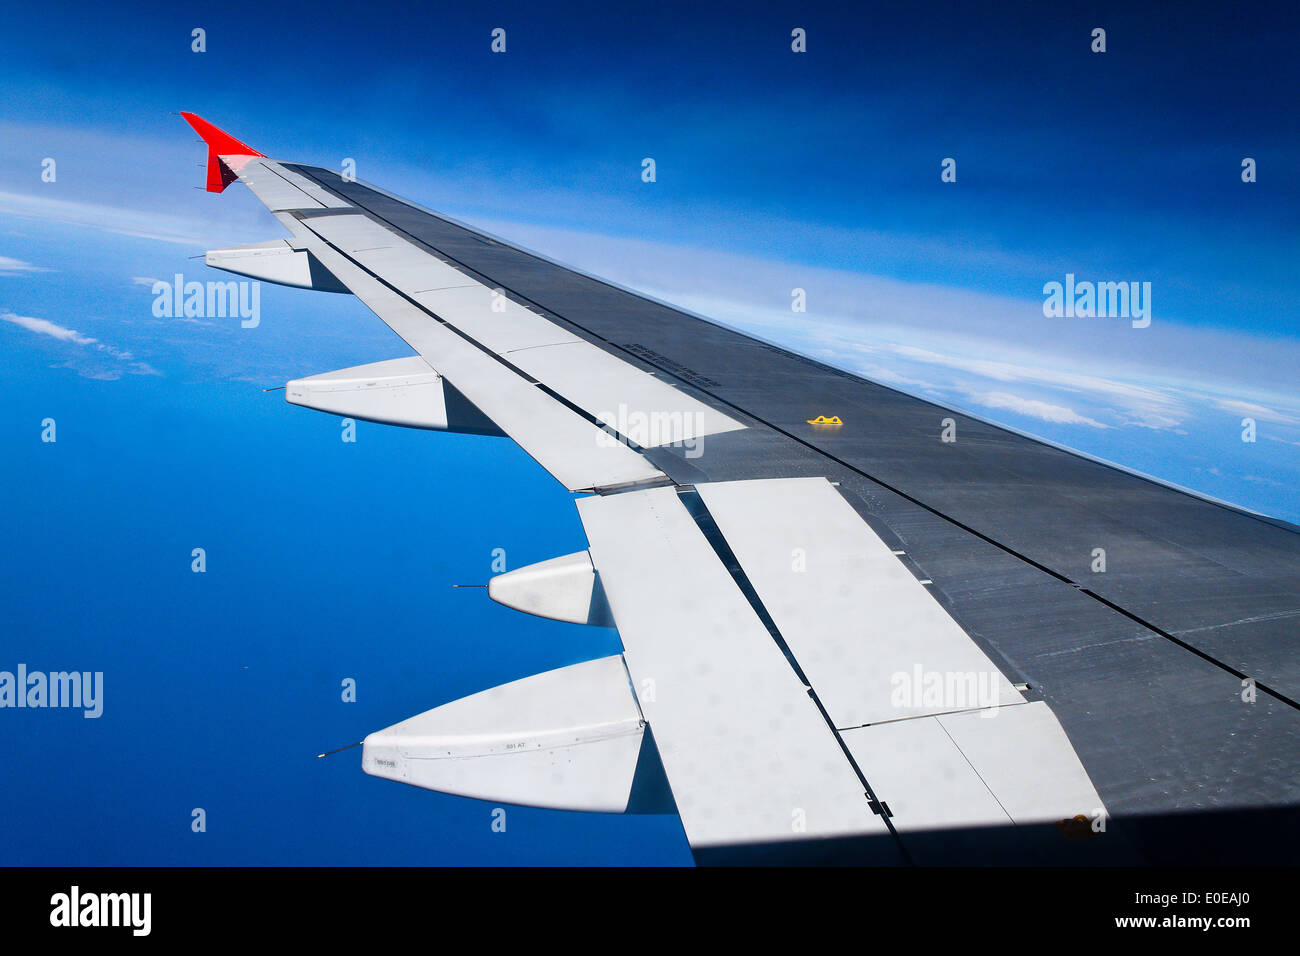 A wing of a passenger of airplane, Eine Tragflaeche eines Passagier Flugzeuges Stock Photo